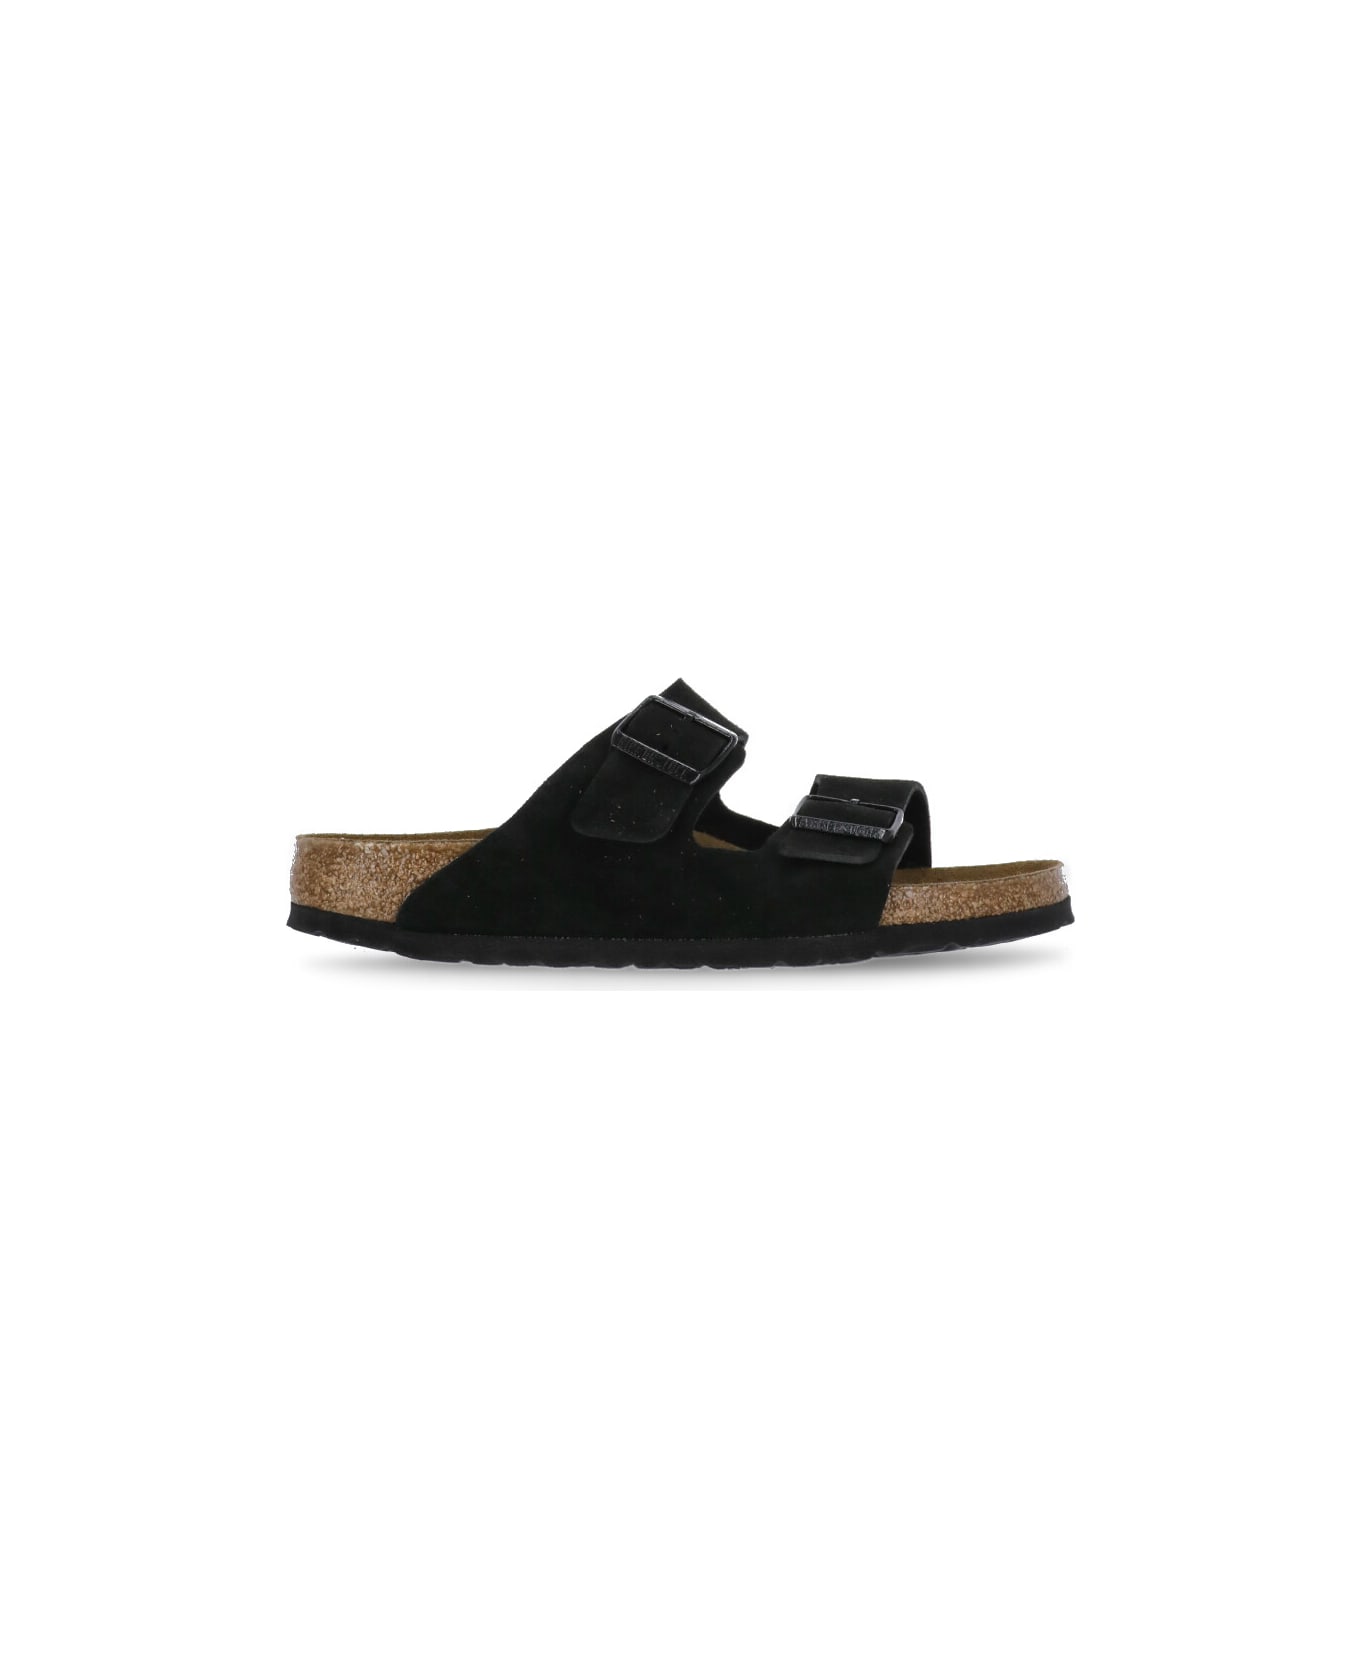 Birkenstock Arizona Sandals - Black フラットシューズ